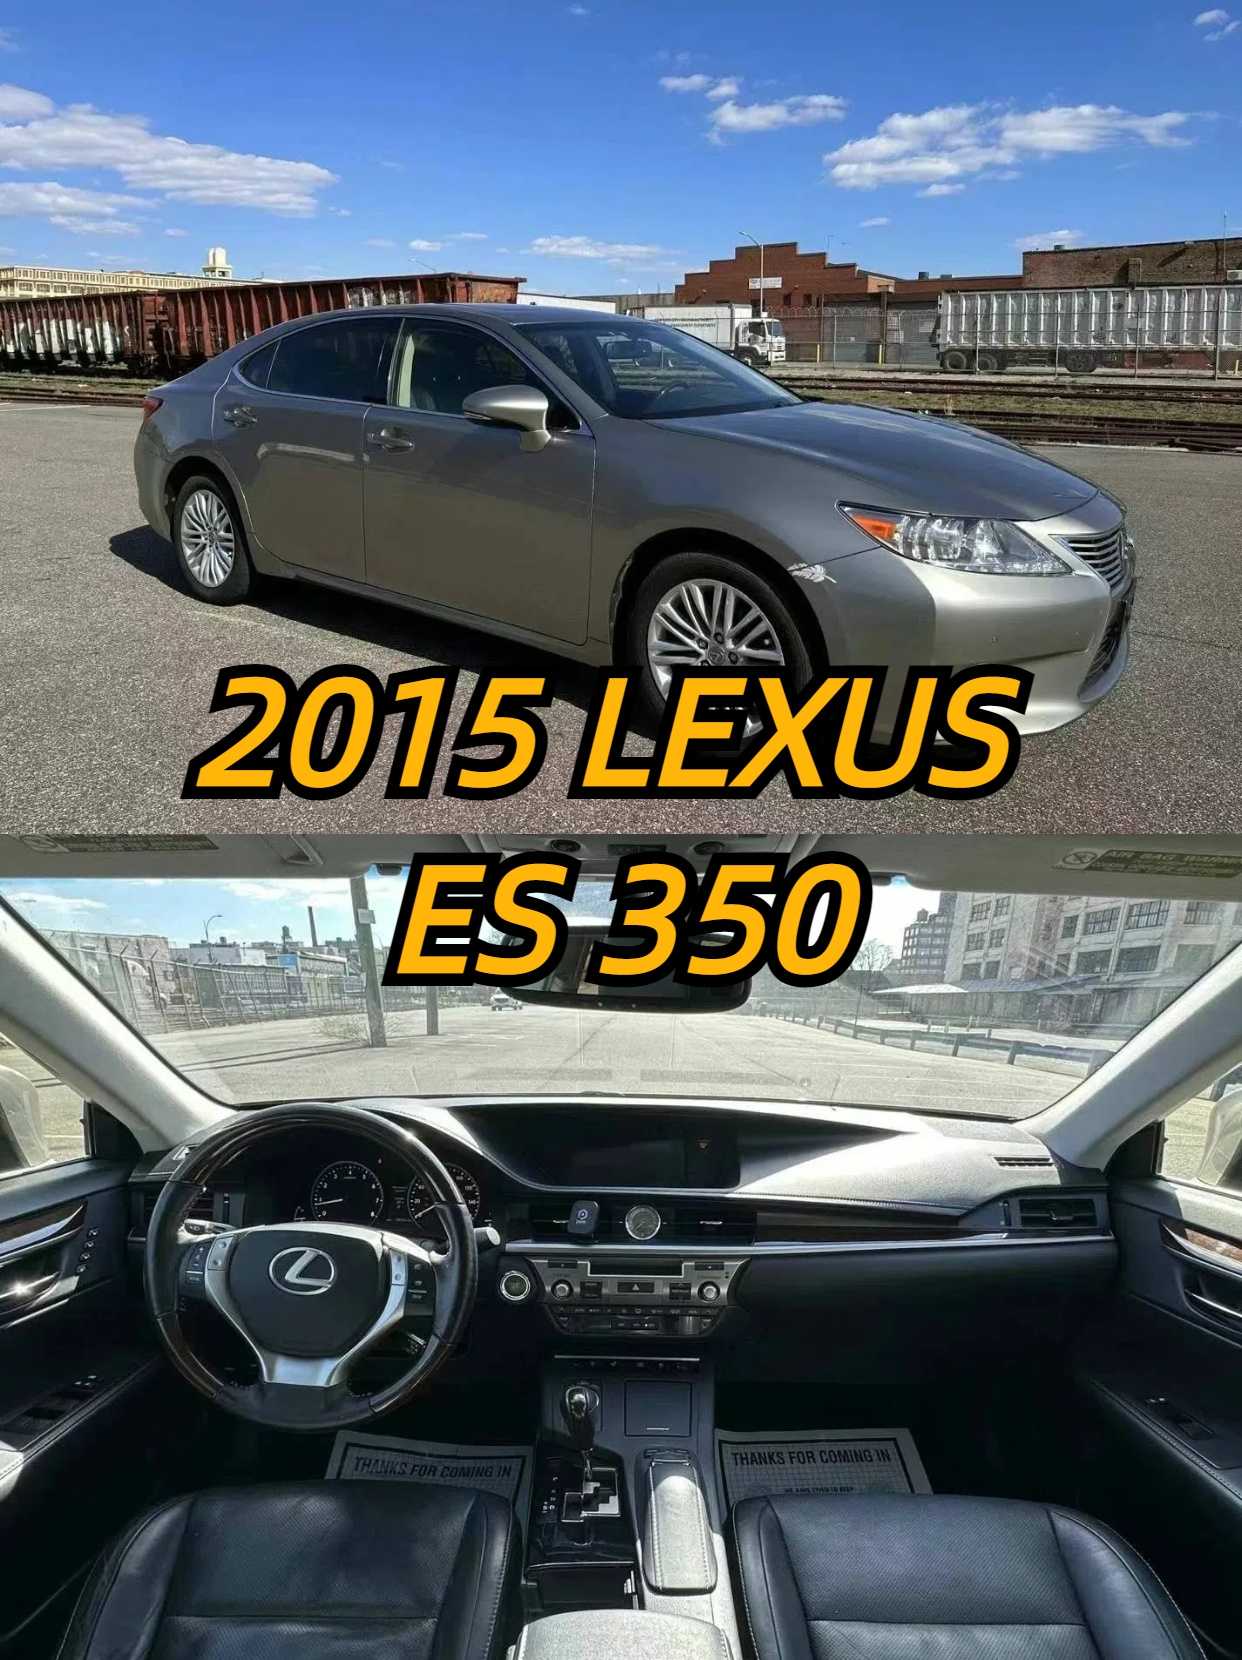 2015 LEXUS ES 350.jpg